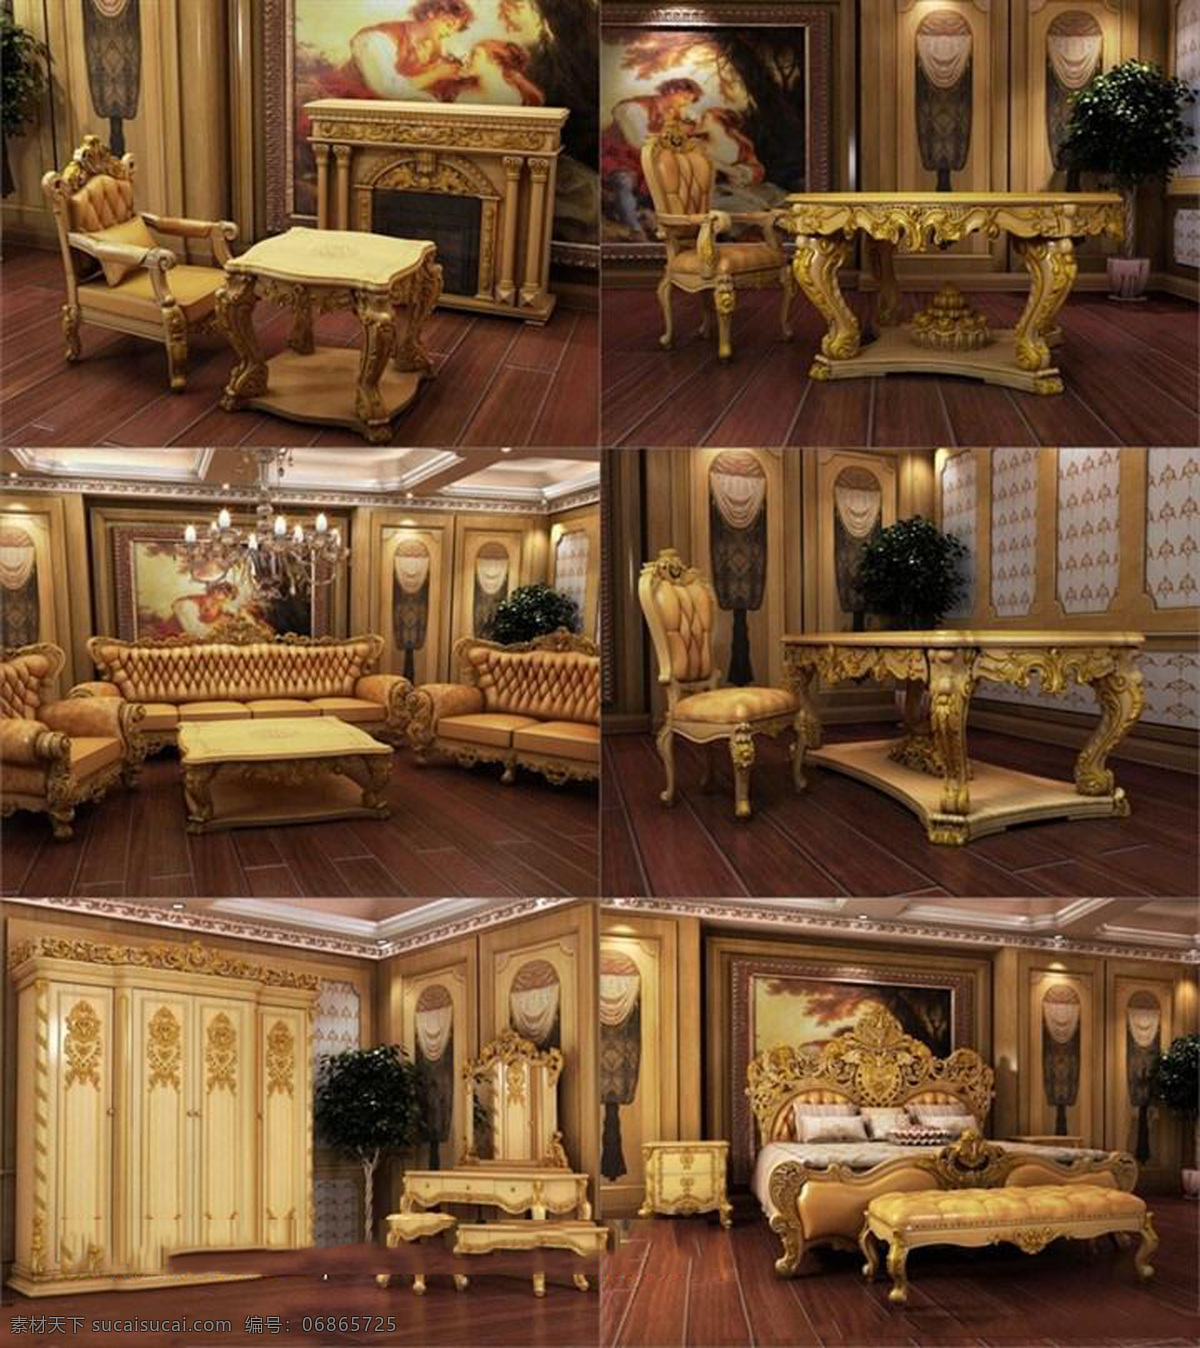 欧式 客厅 模型 别墅客厅 客厅装修图 沙发茶几 效果图 家居装饰素材 室内设计